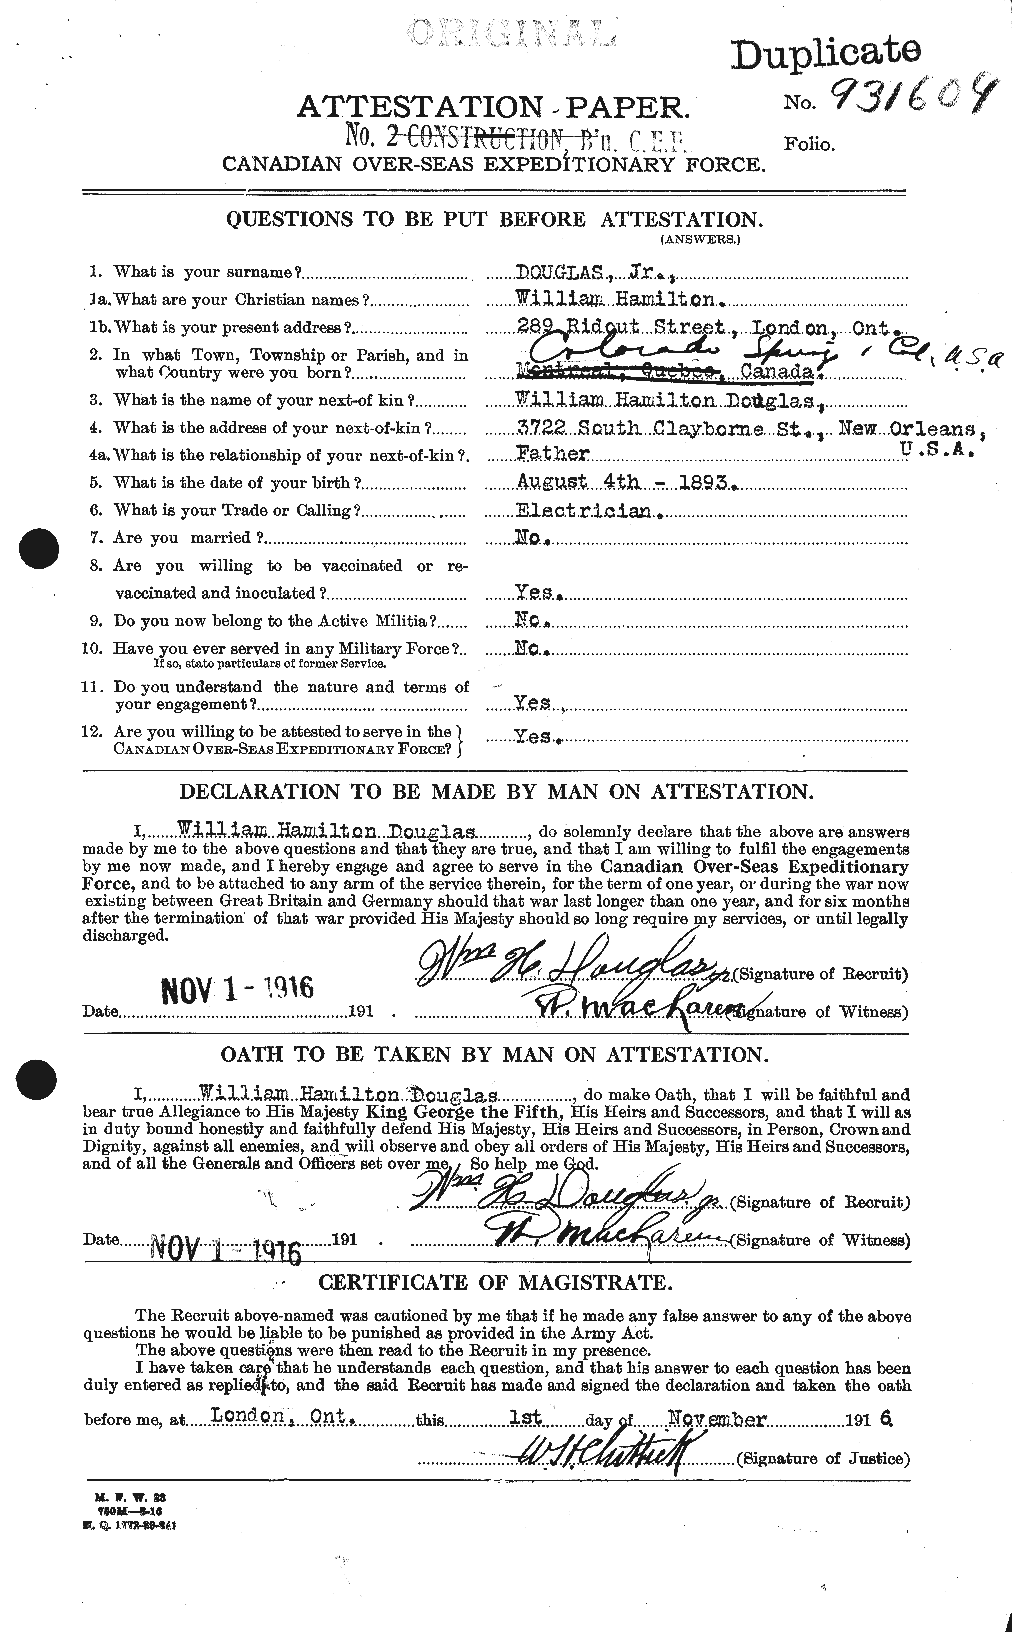 Dossiers du Personnel de la Première Guerre mondiale - CEC 295338a